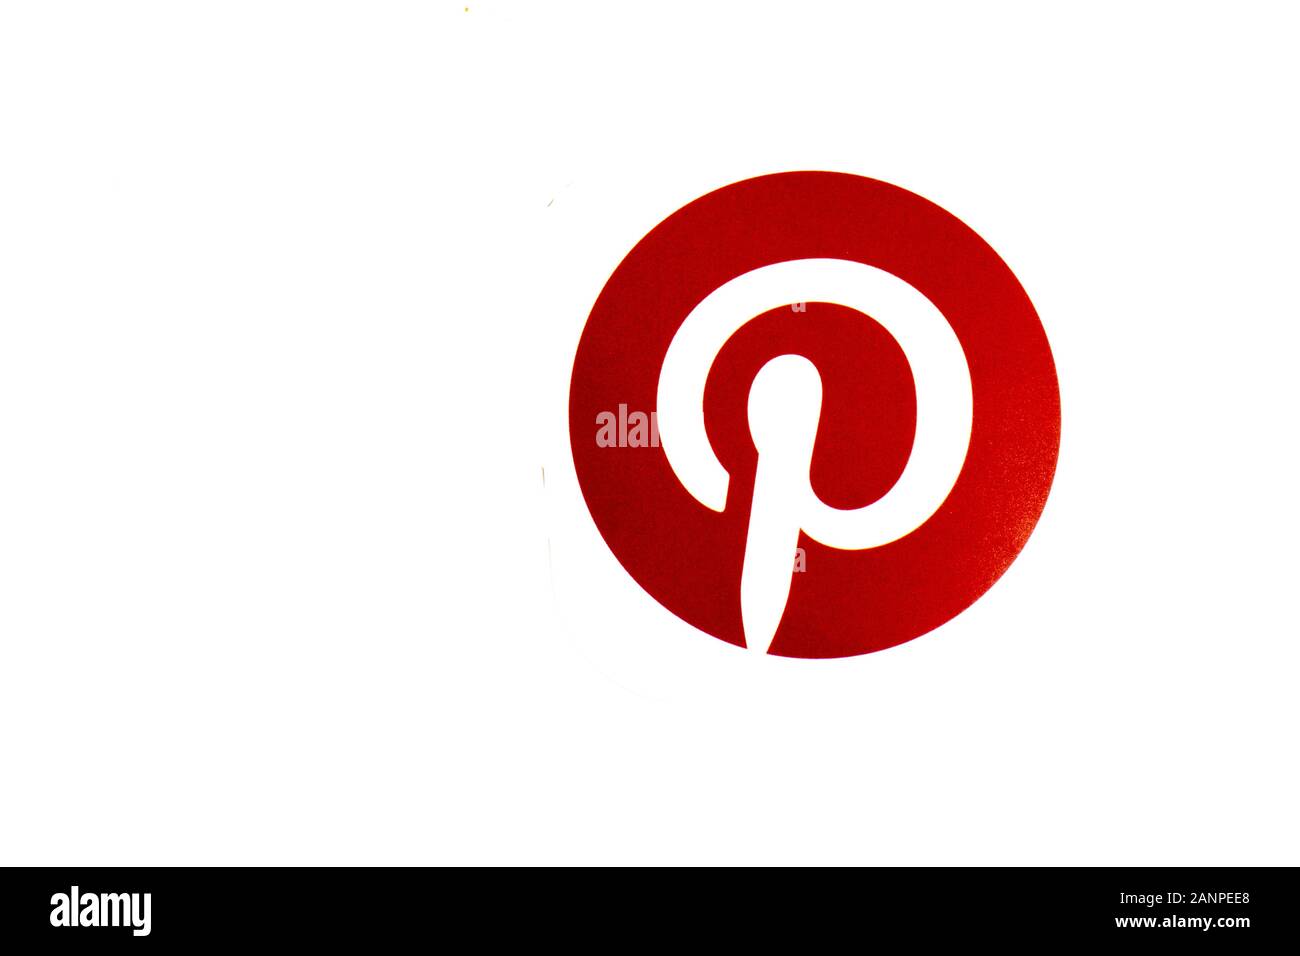 Los Angeles, Californie, États-Unis - 17 janvier 2020: Logo Pinterest avec espace de copie, éditorial illustratif Banque D'Images